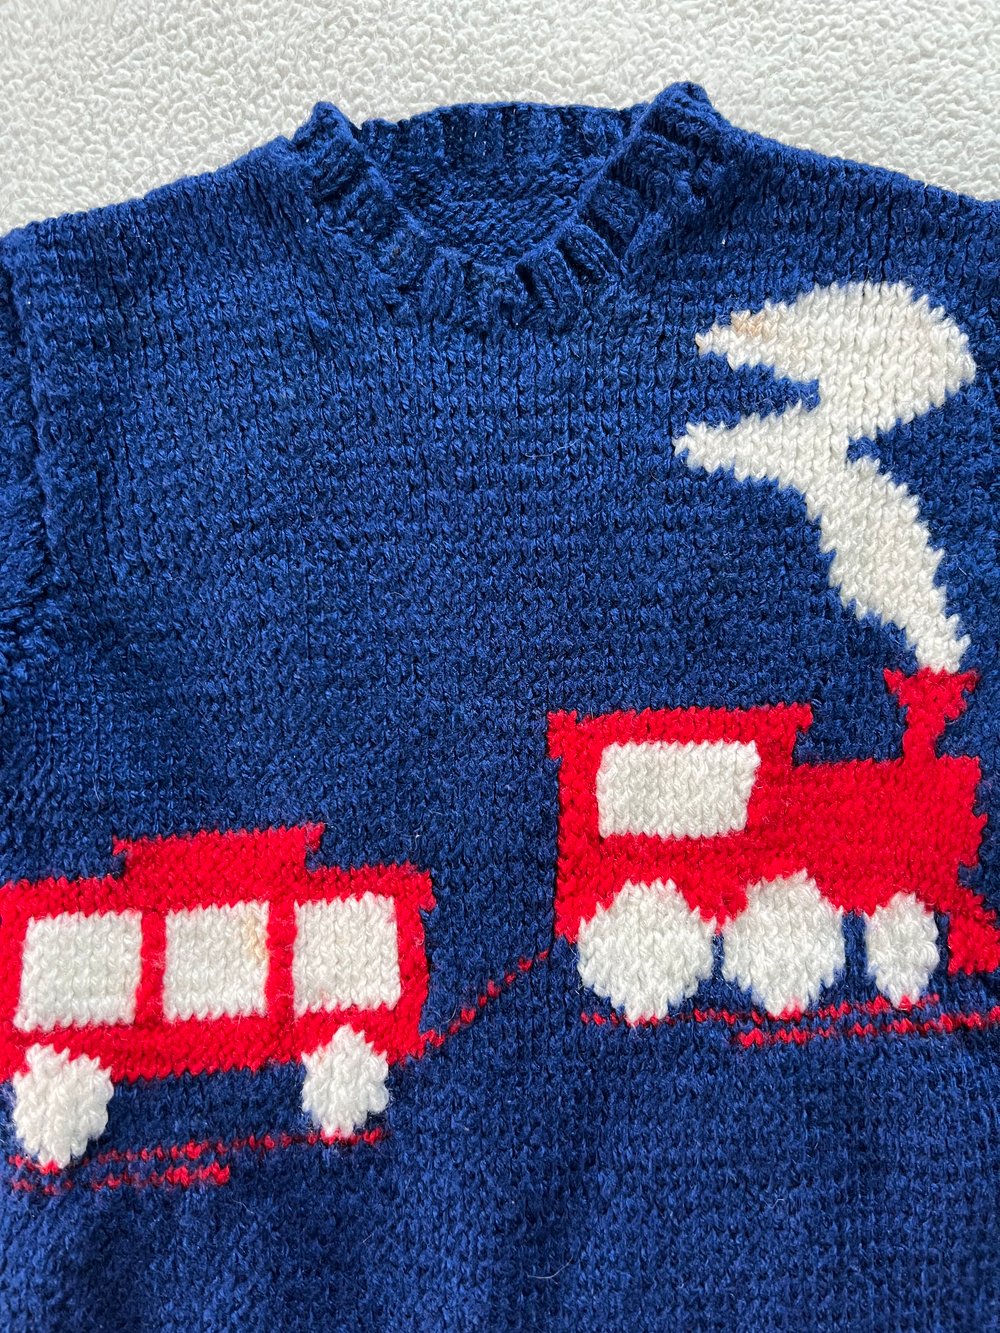 Vintage Kid’s Choo Choo Train Sweater